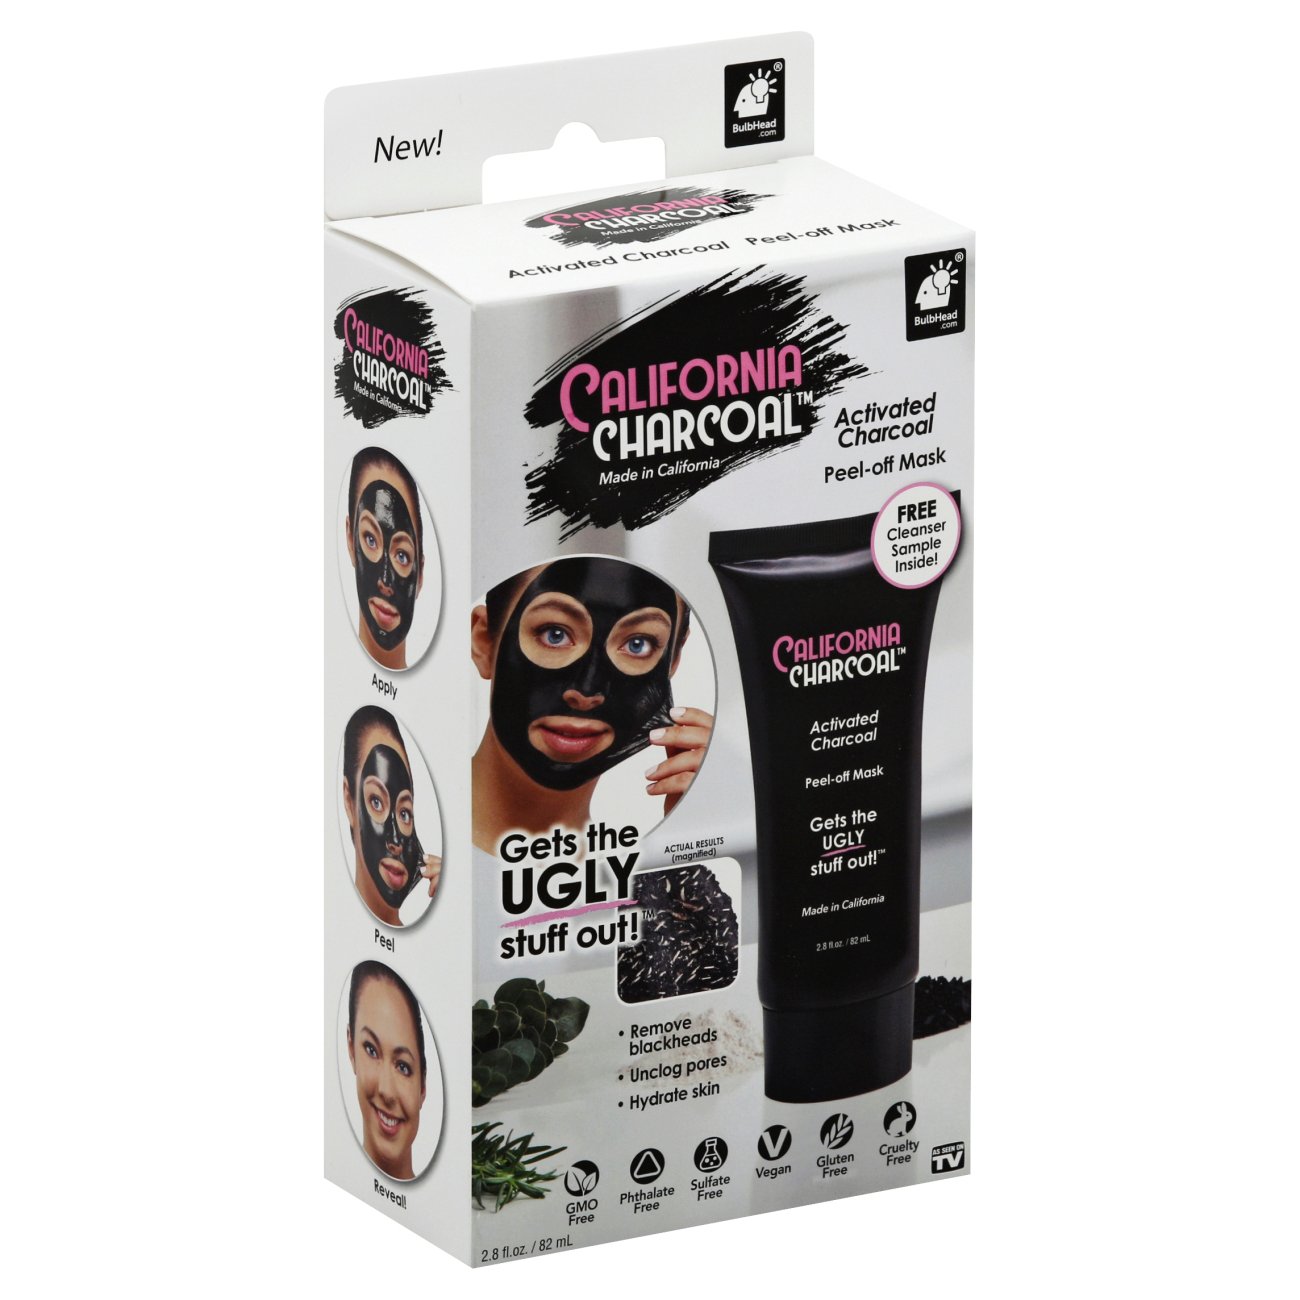 California Charcoal Face Mask - Shop Facial Masks & Treatments at H-E-B